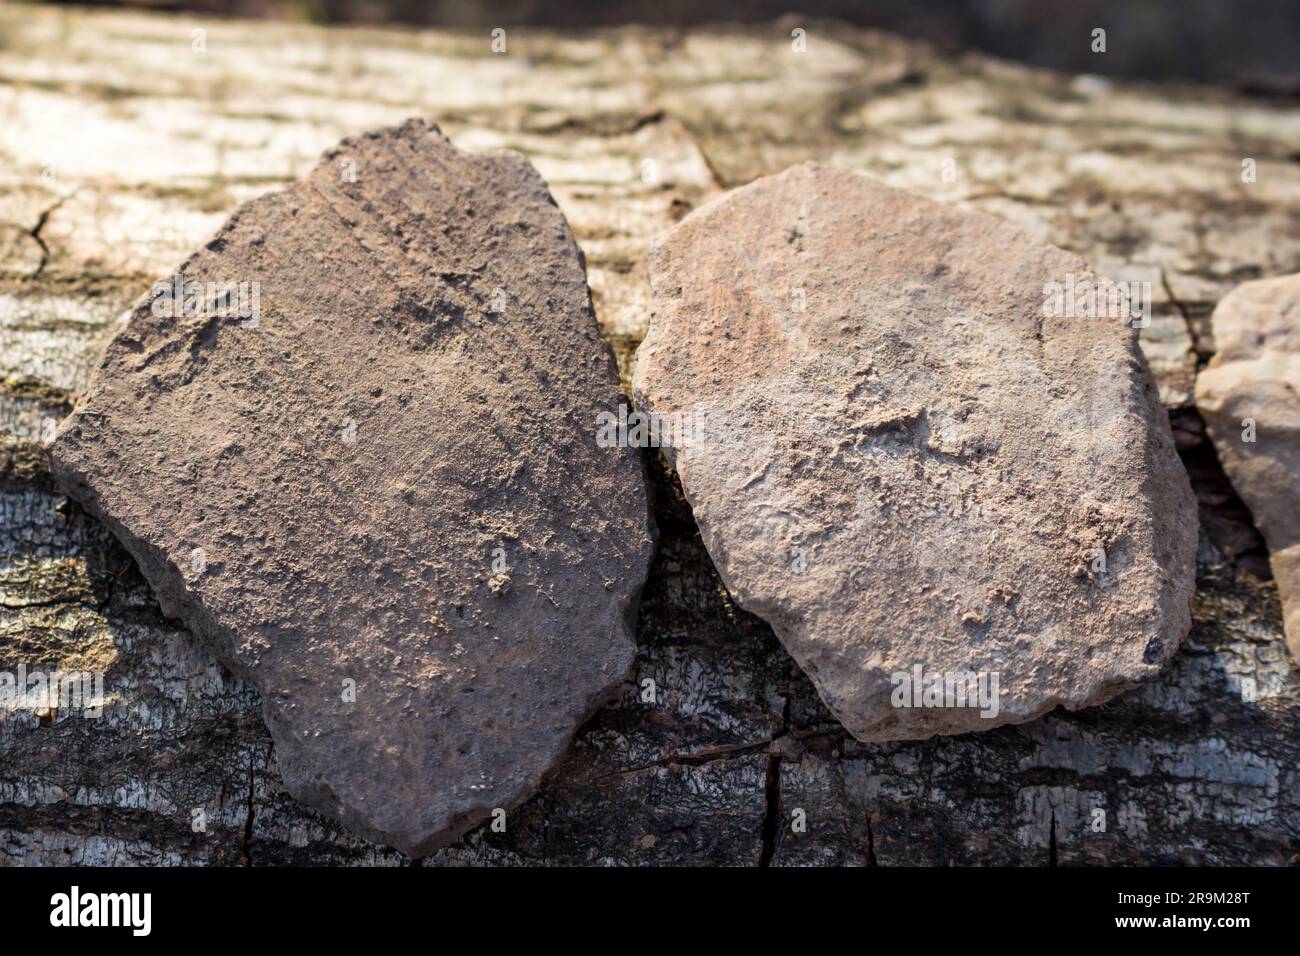 Fragments de navires en céramique trouvés dans le sol à l'emplacement d'un ancien règlement, objets archéologiques. Région de Kaluga, Russie Banque D'Images